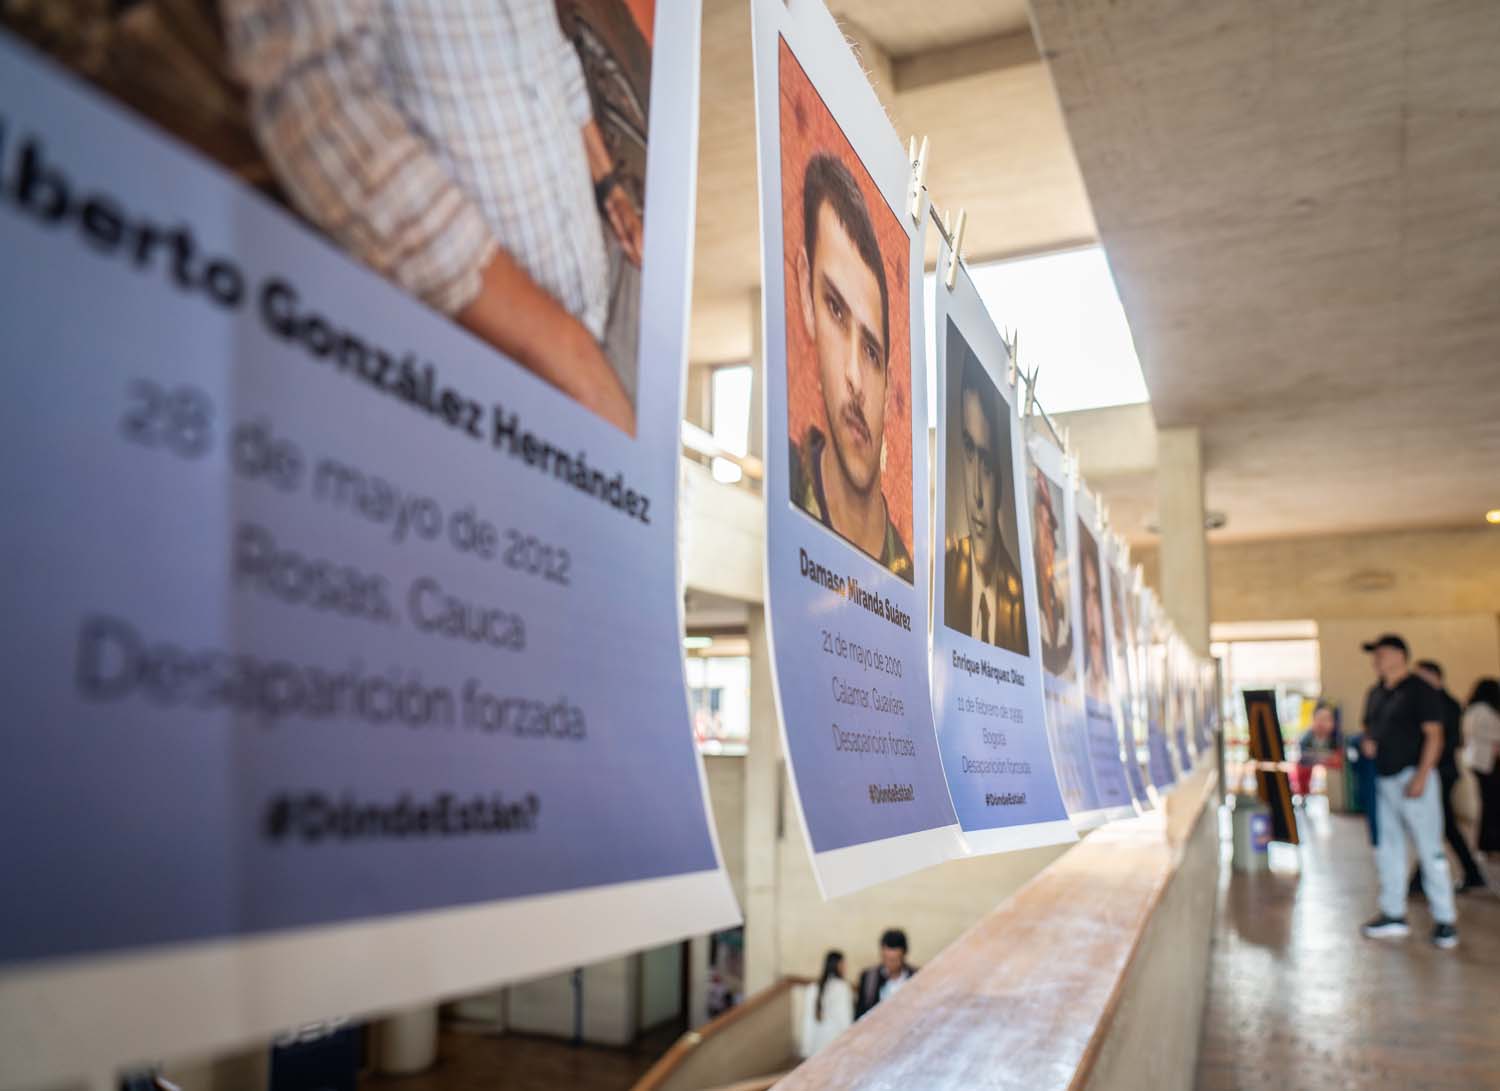 يتم ترتيب صور تكريم الضحايا المختفين خارج مكتبة في بوغوتا.